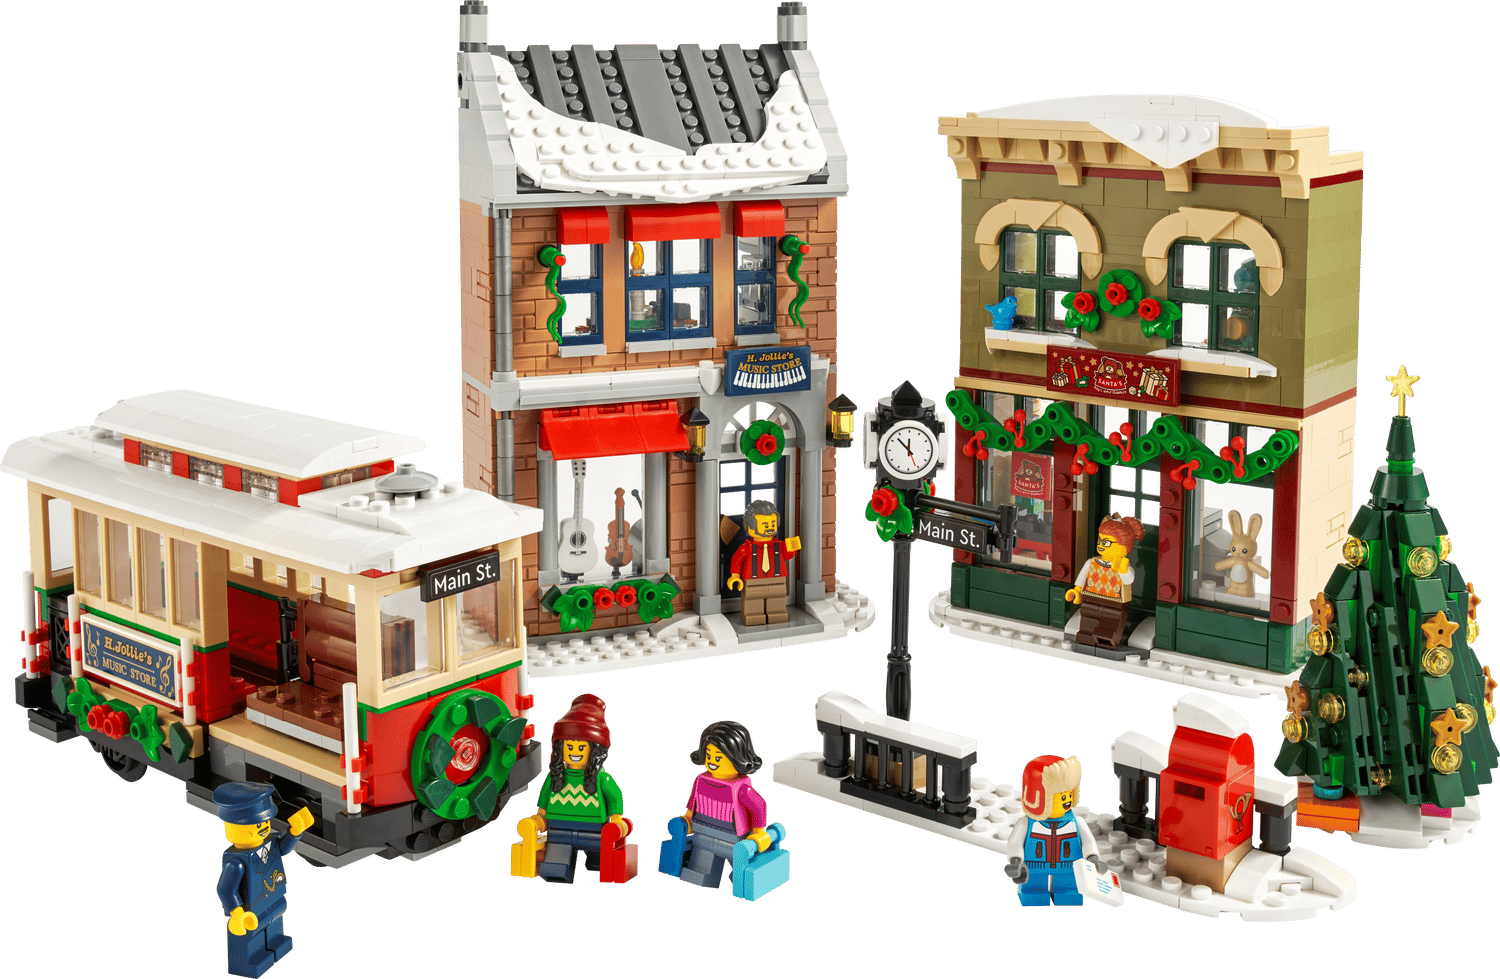 Énorme remise sur ce set de LEGO disponible pendant les soldes Cdiscount -  Le Parisien